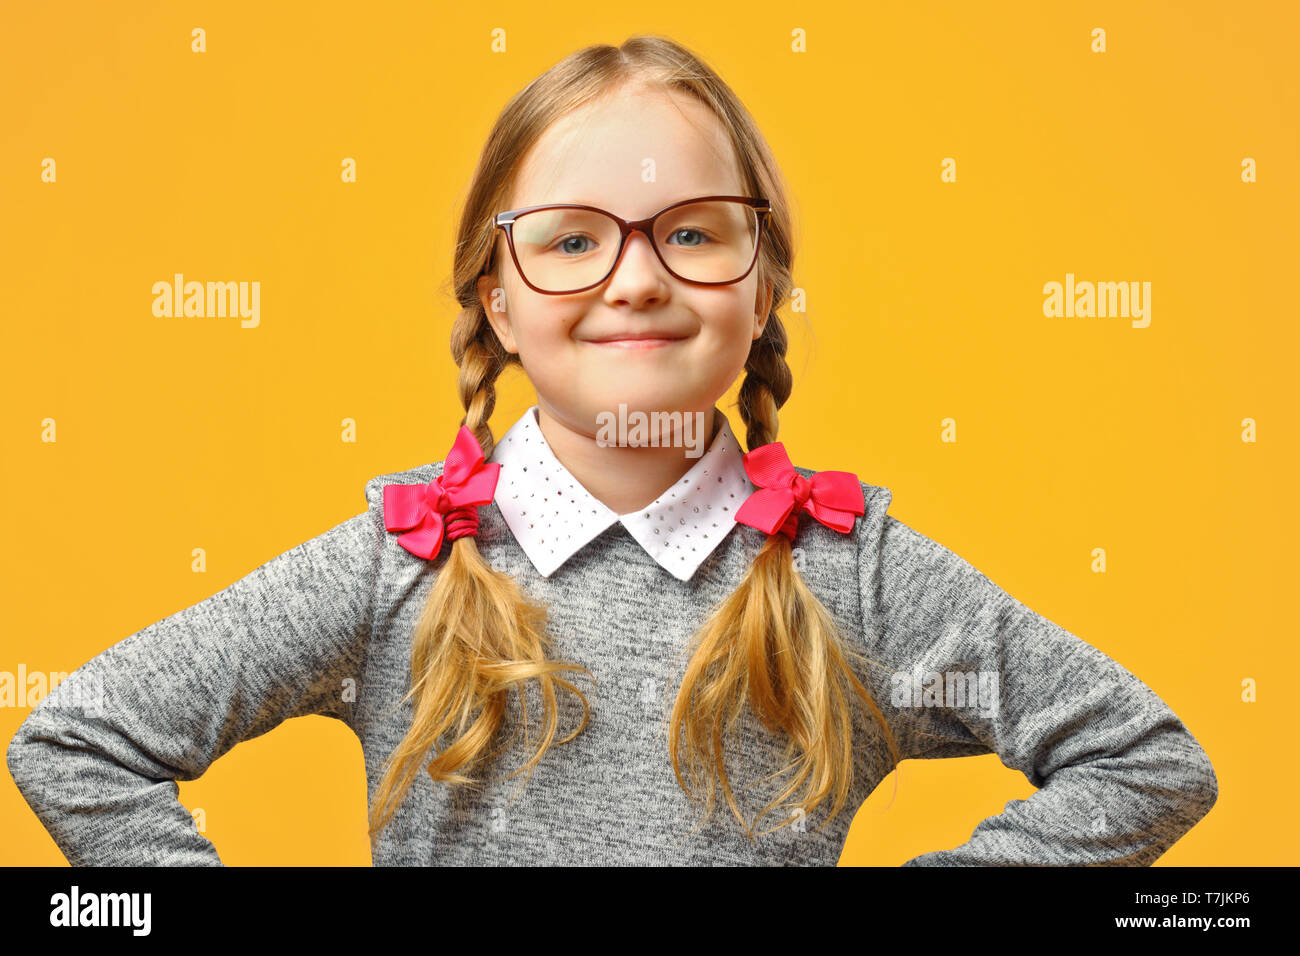 Portrait of a cute little baby girl avec des lunettes sur un fond jaune. La lycéenne fait mains dans ses hanches et se penche sur l'appareil photo. Le concep Banque D'Images